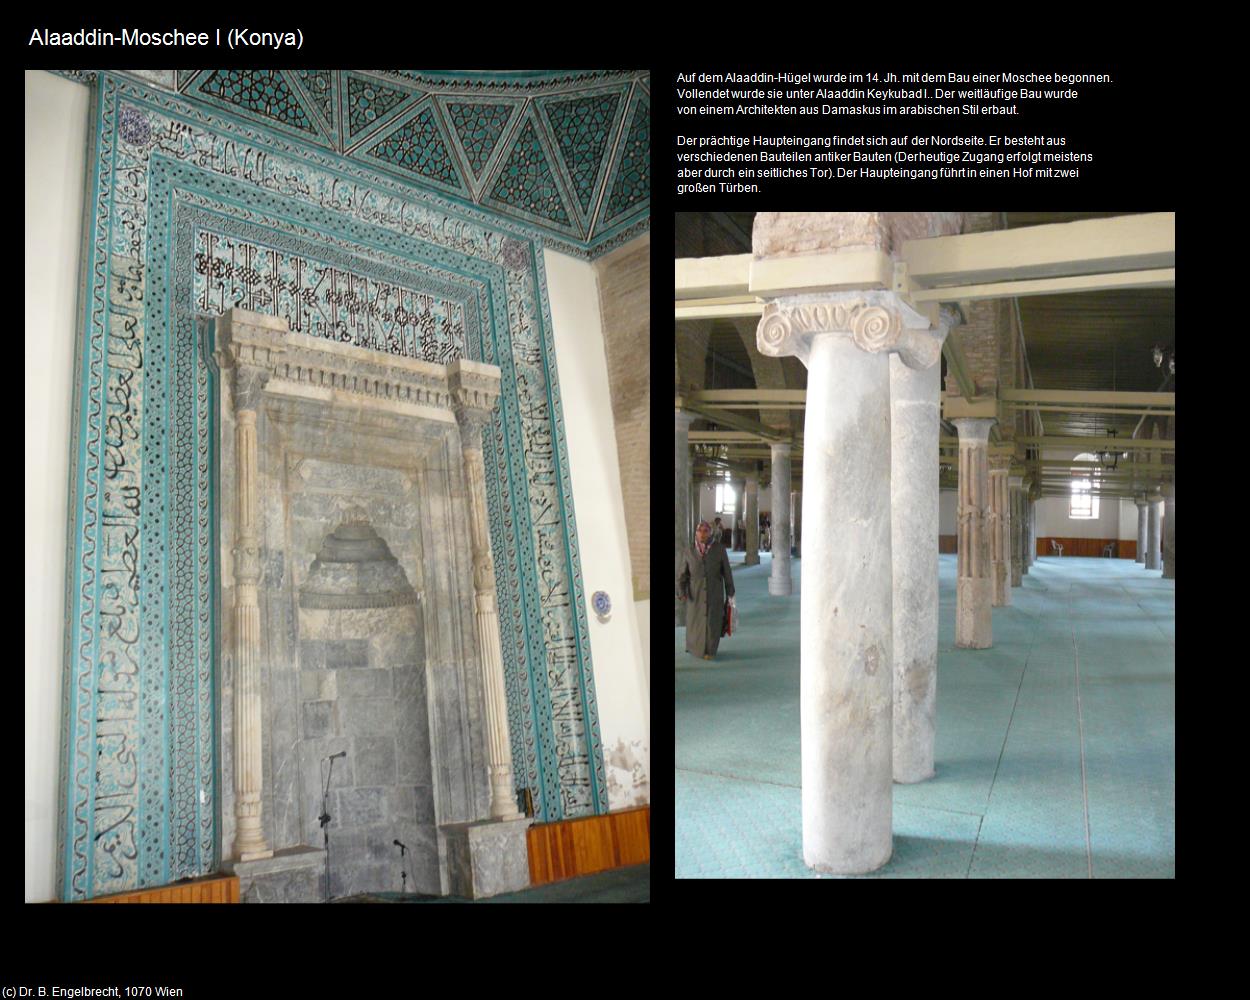 Alaaddin-Moschee I (Konya) in TÜRKEI